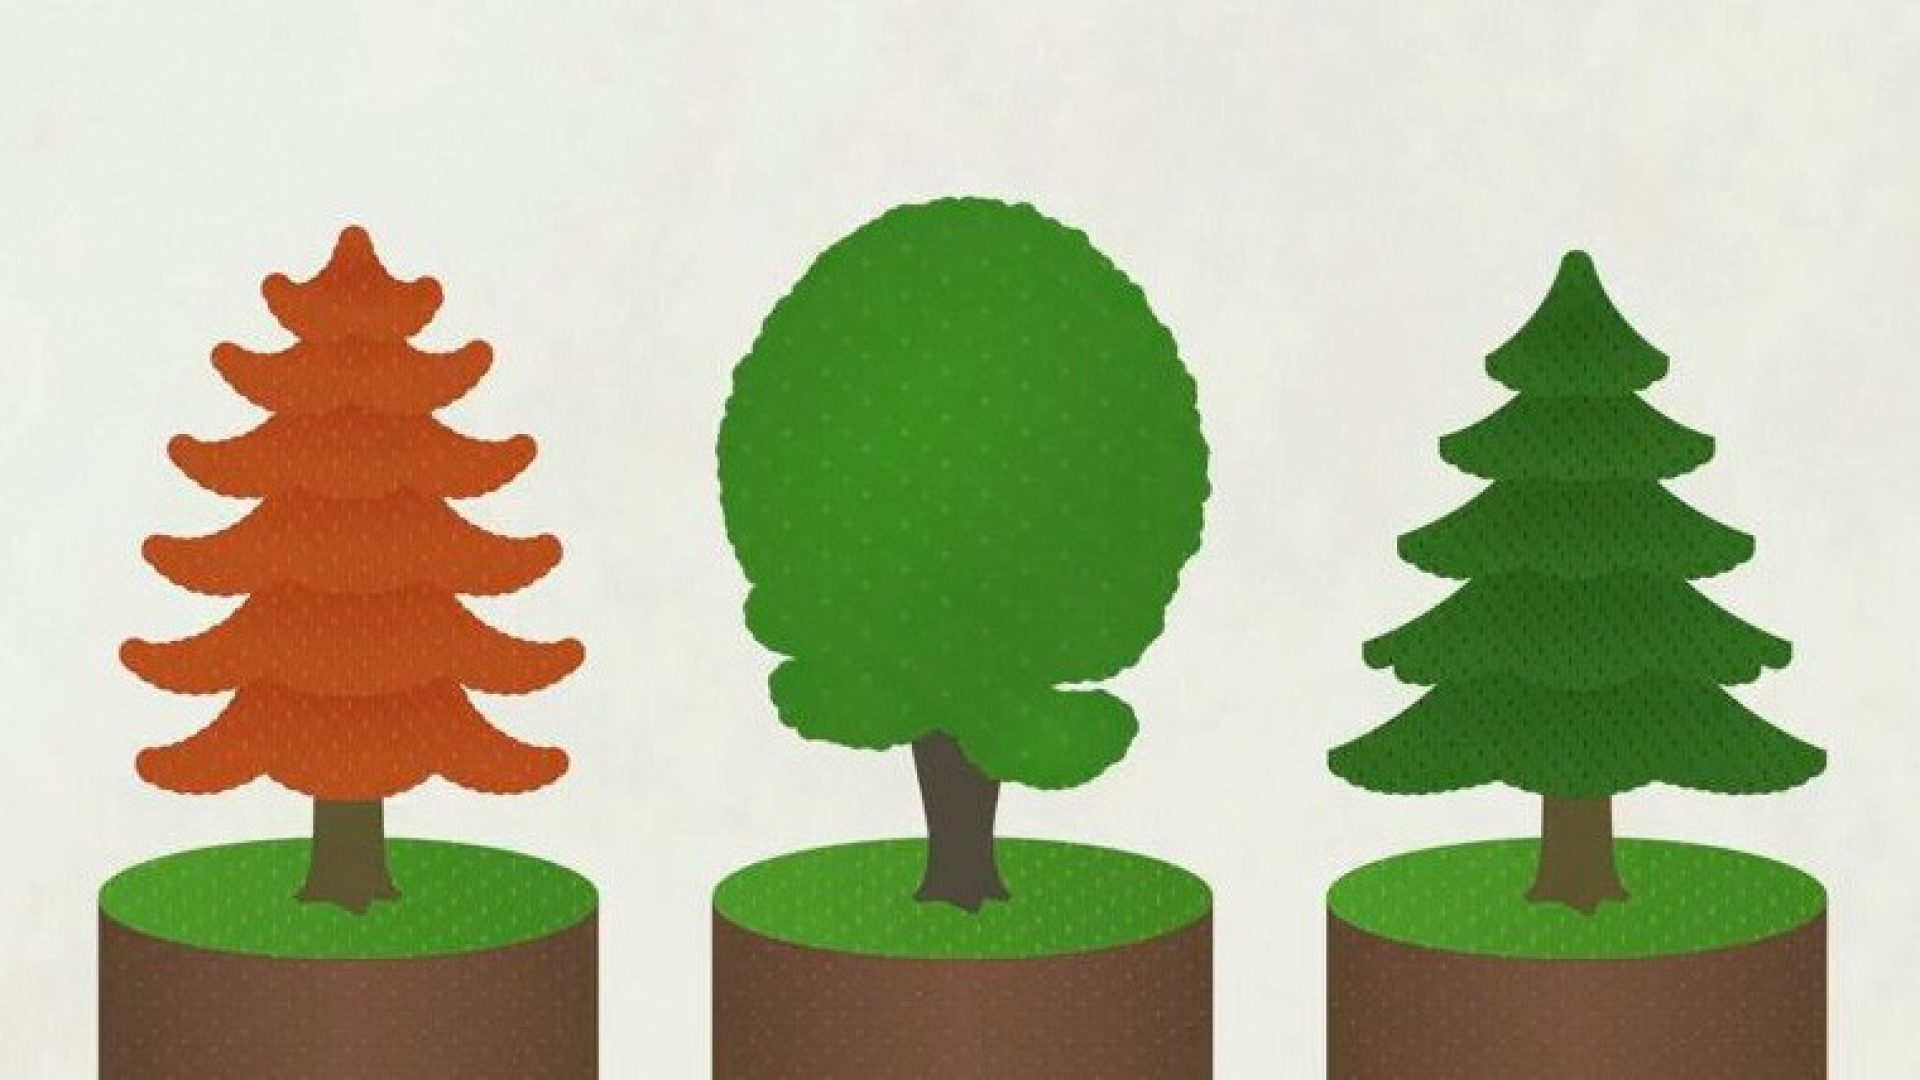 Wälder sind die grüne Versicherung. Sie schützen unseren Siedlungs- und Lebensraum. Helvetia pflanzte bereits 430.000 Bäume für den Schutzwald. 🌲